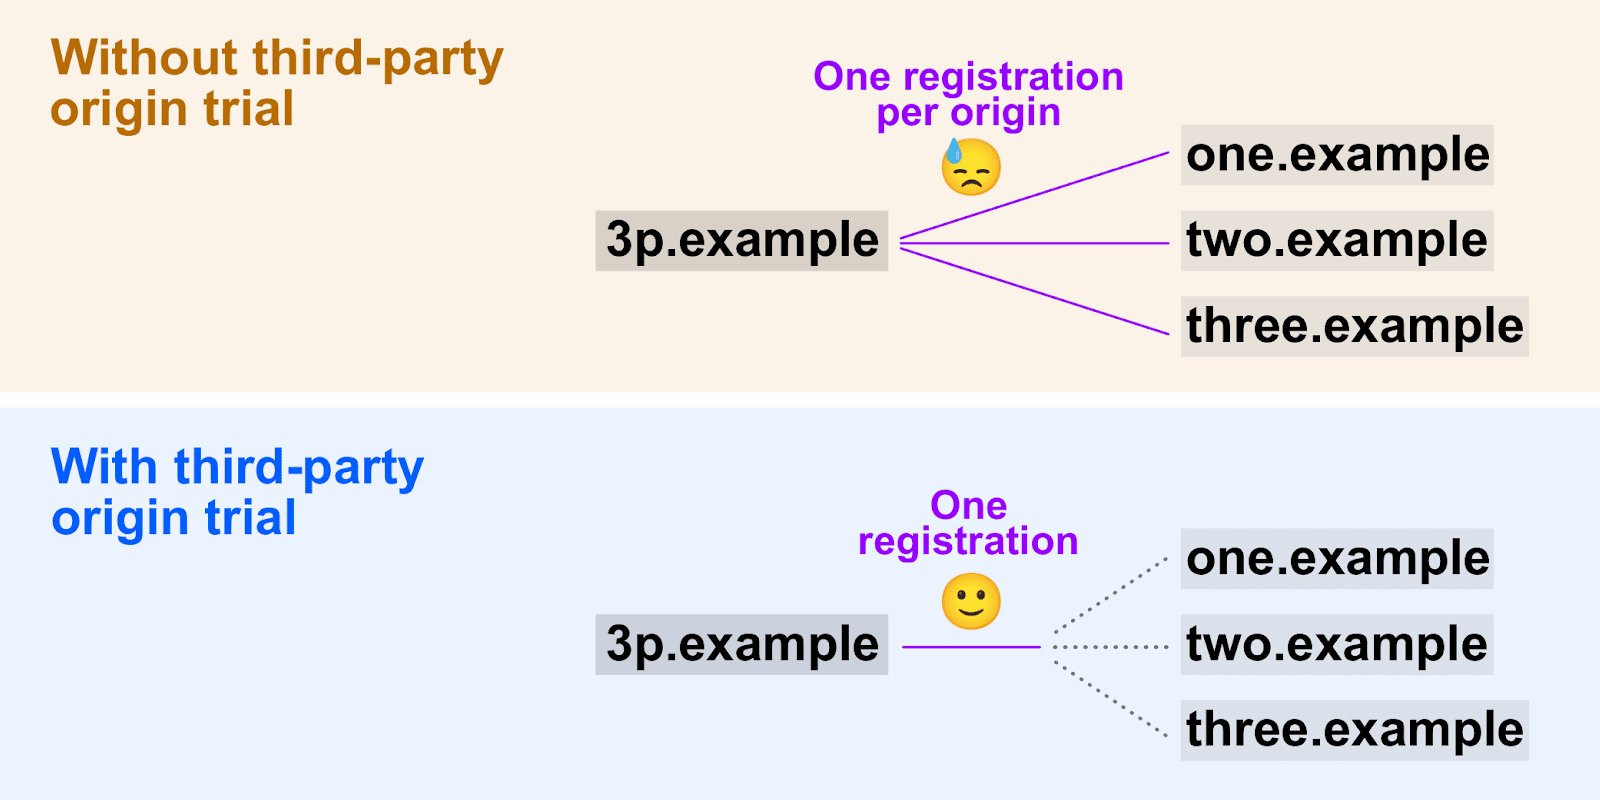 Diagrama mostrando como testes de origem de terceiros permitem que um único token de registro seja usado em várias origens